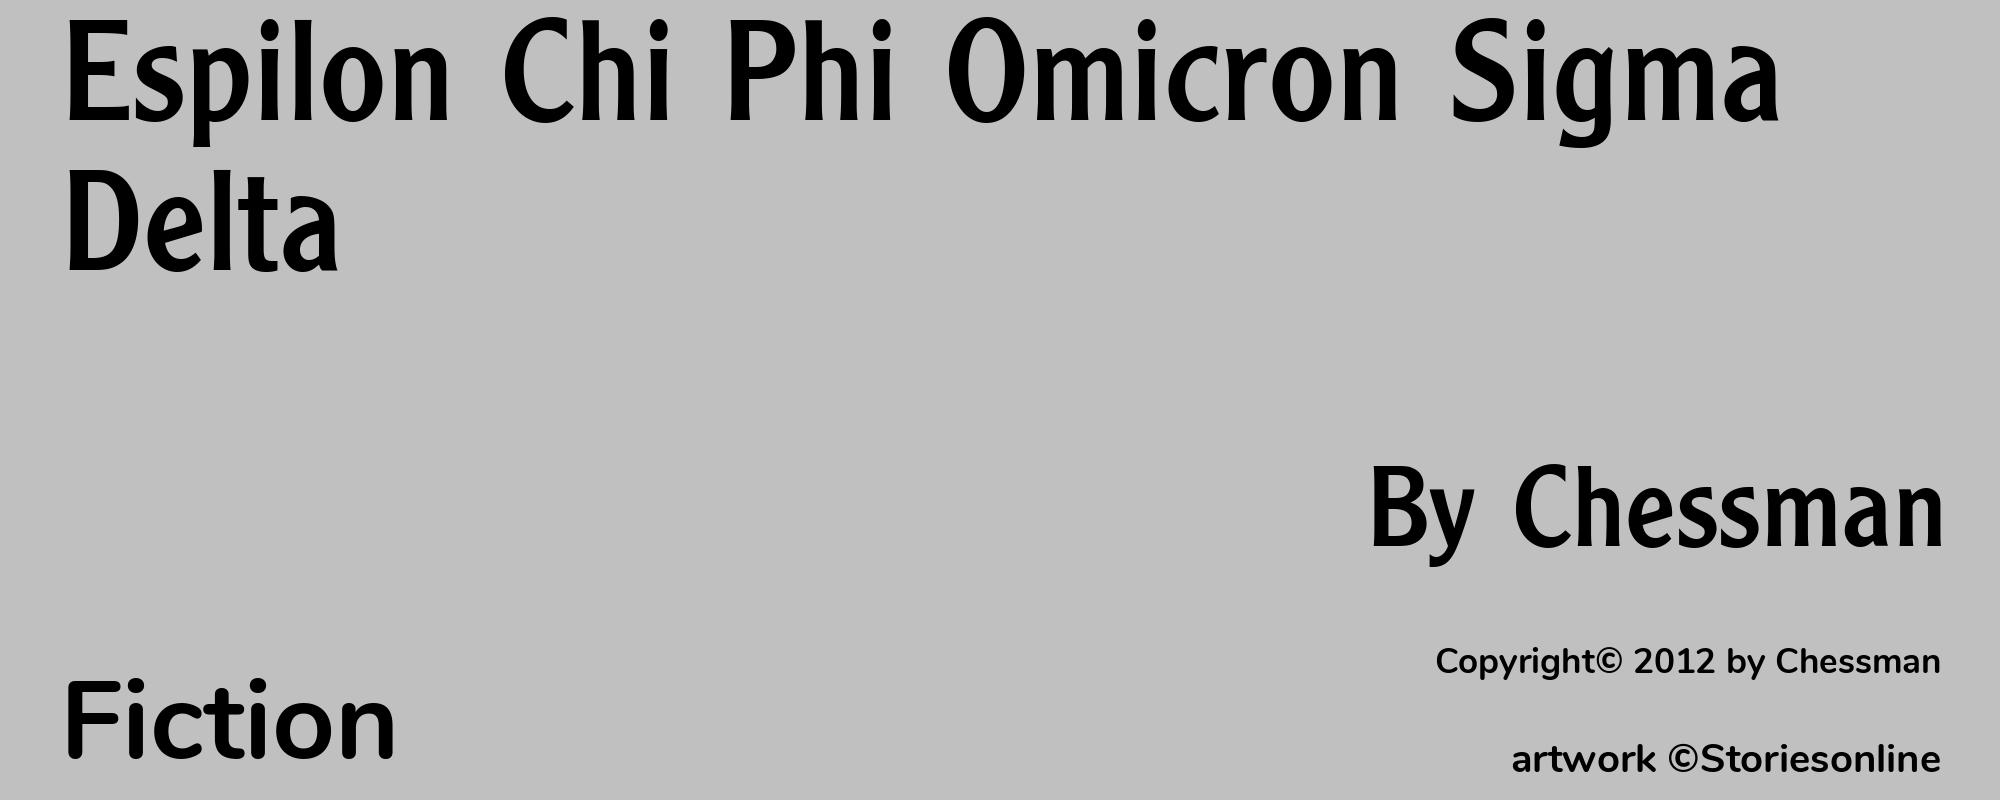 Espilon Chi Phi Omicron Sigma Delta - Cover